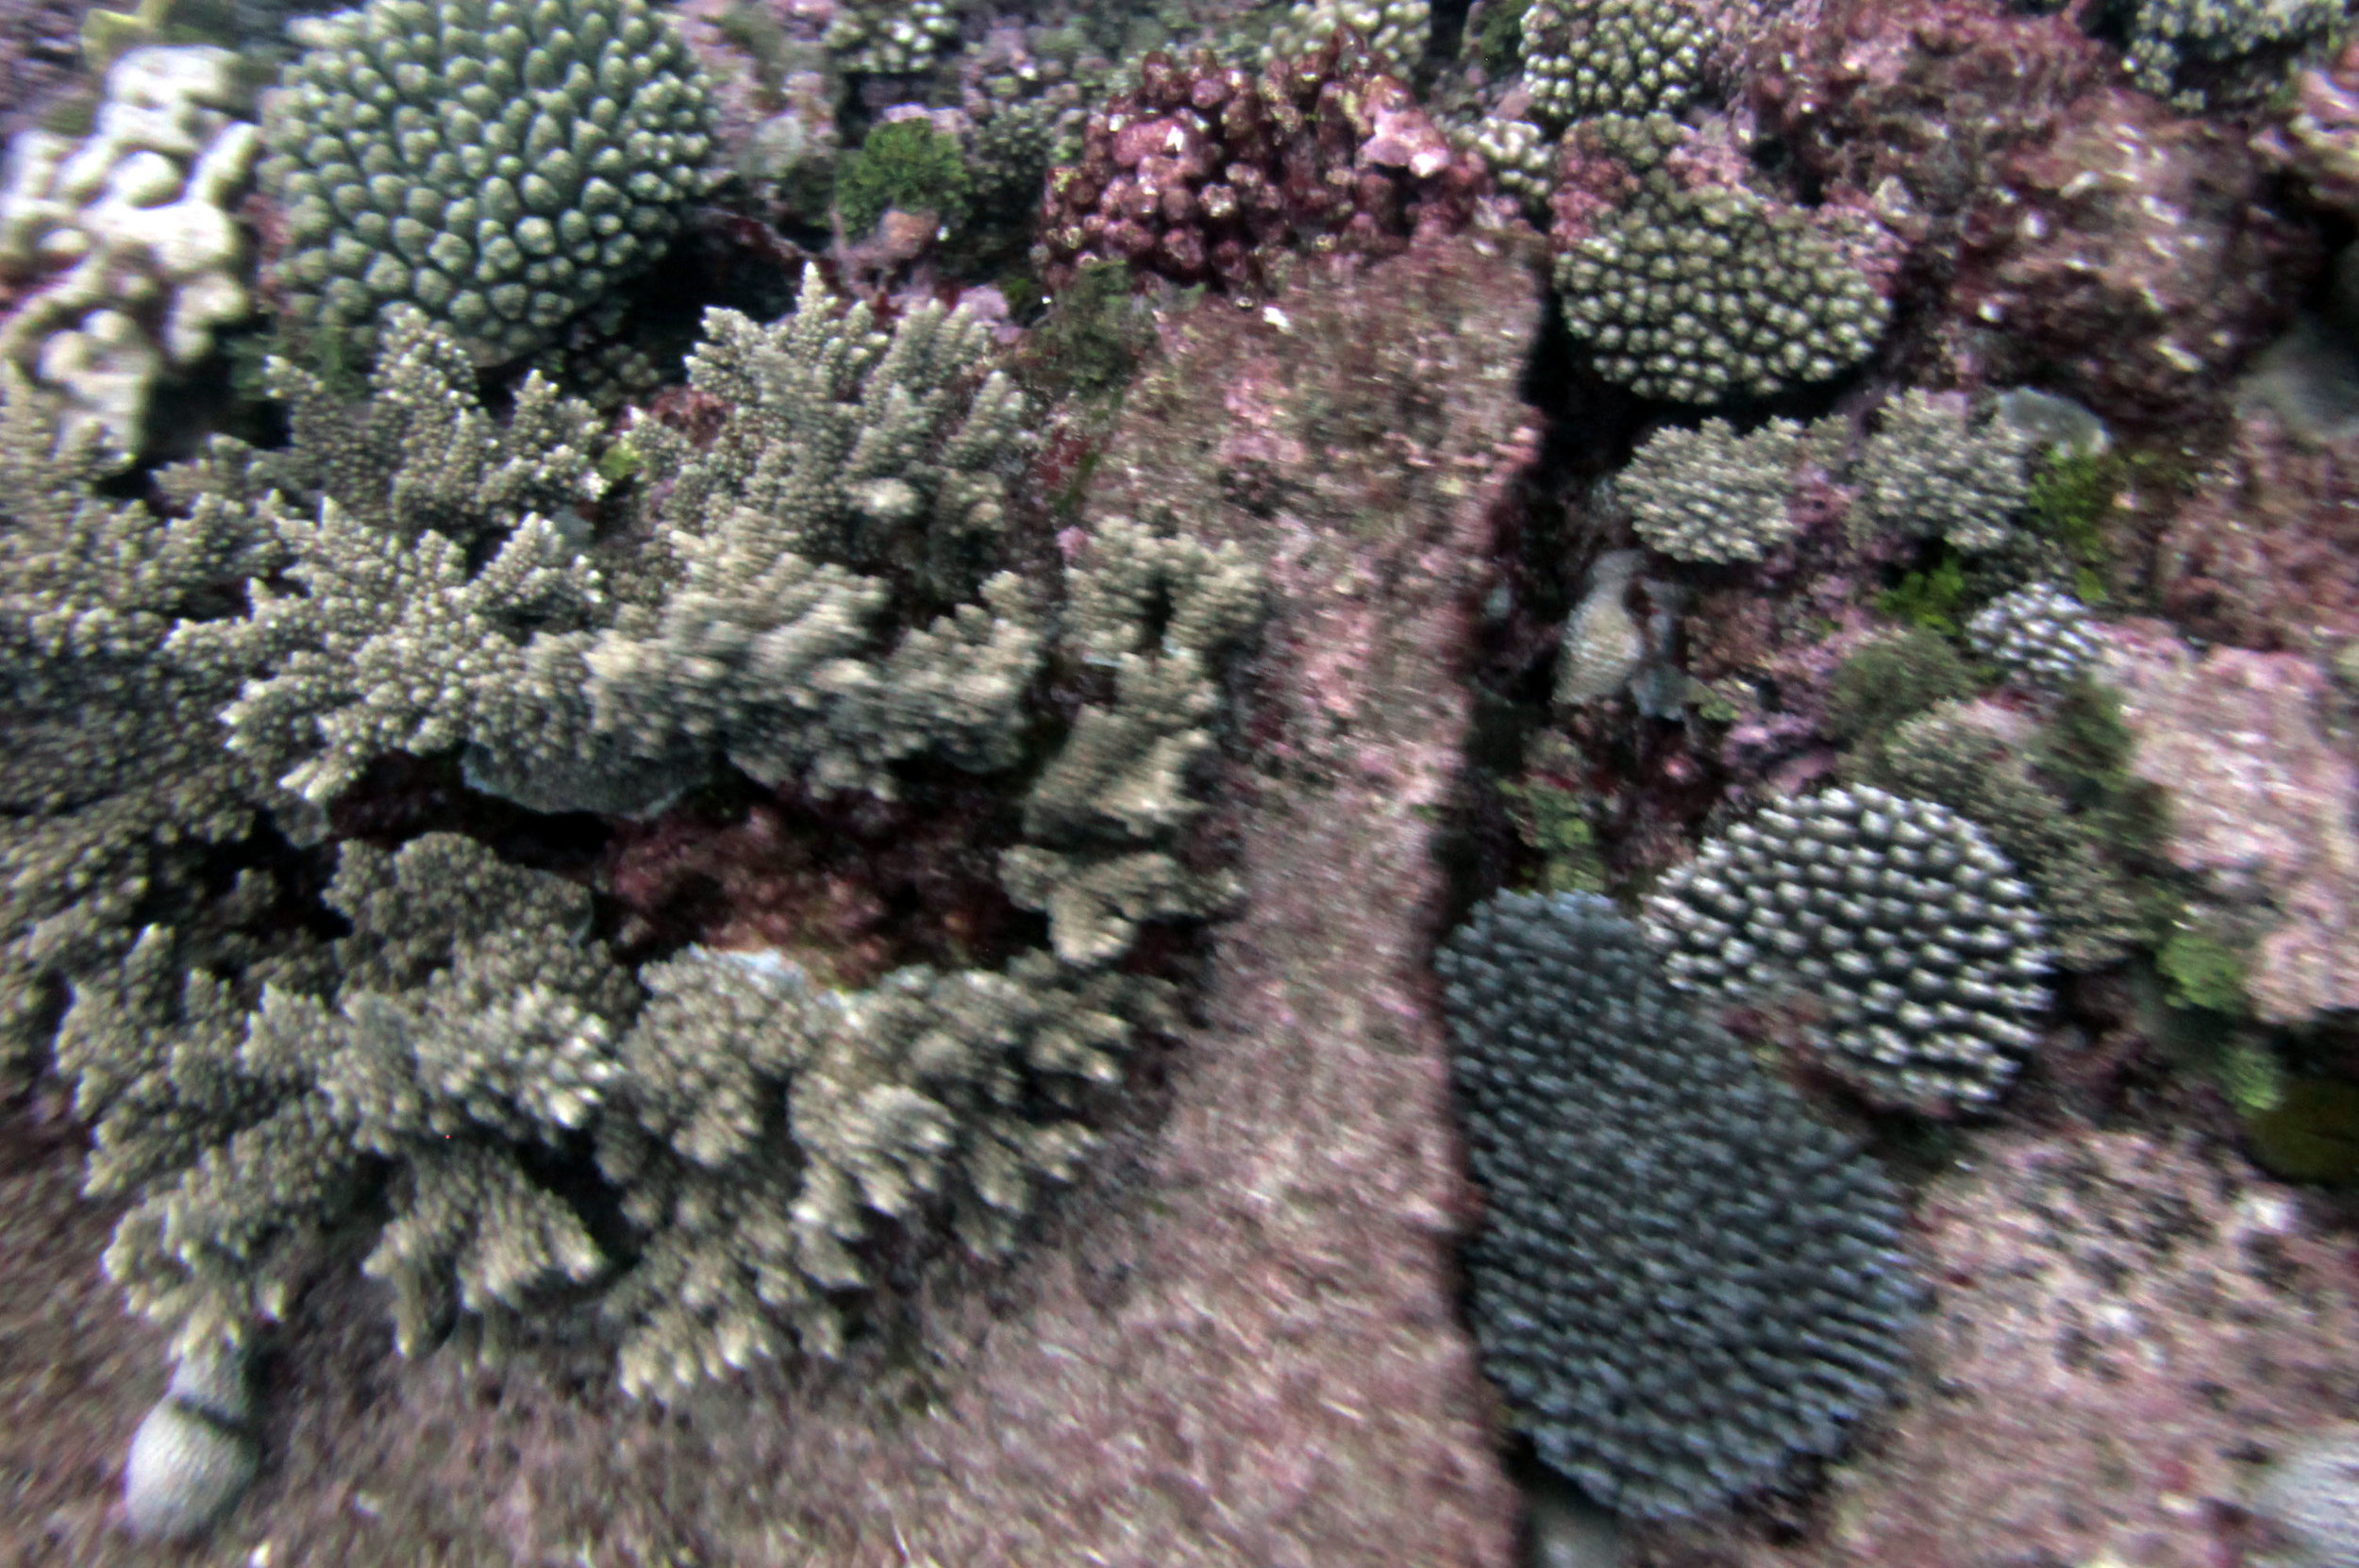 corals 4-16-13.jpg